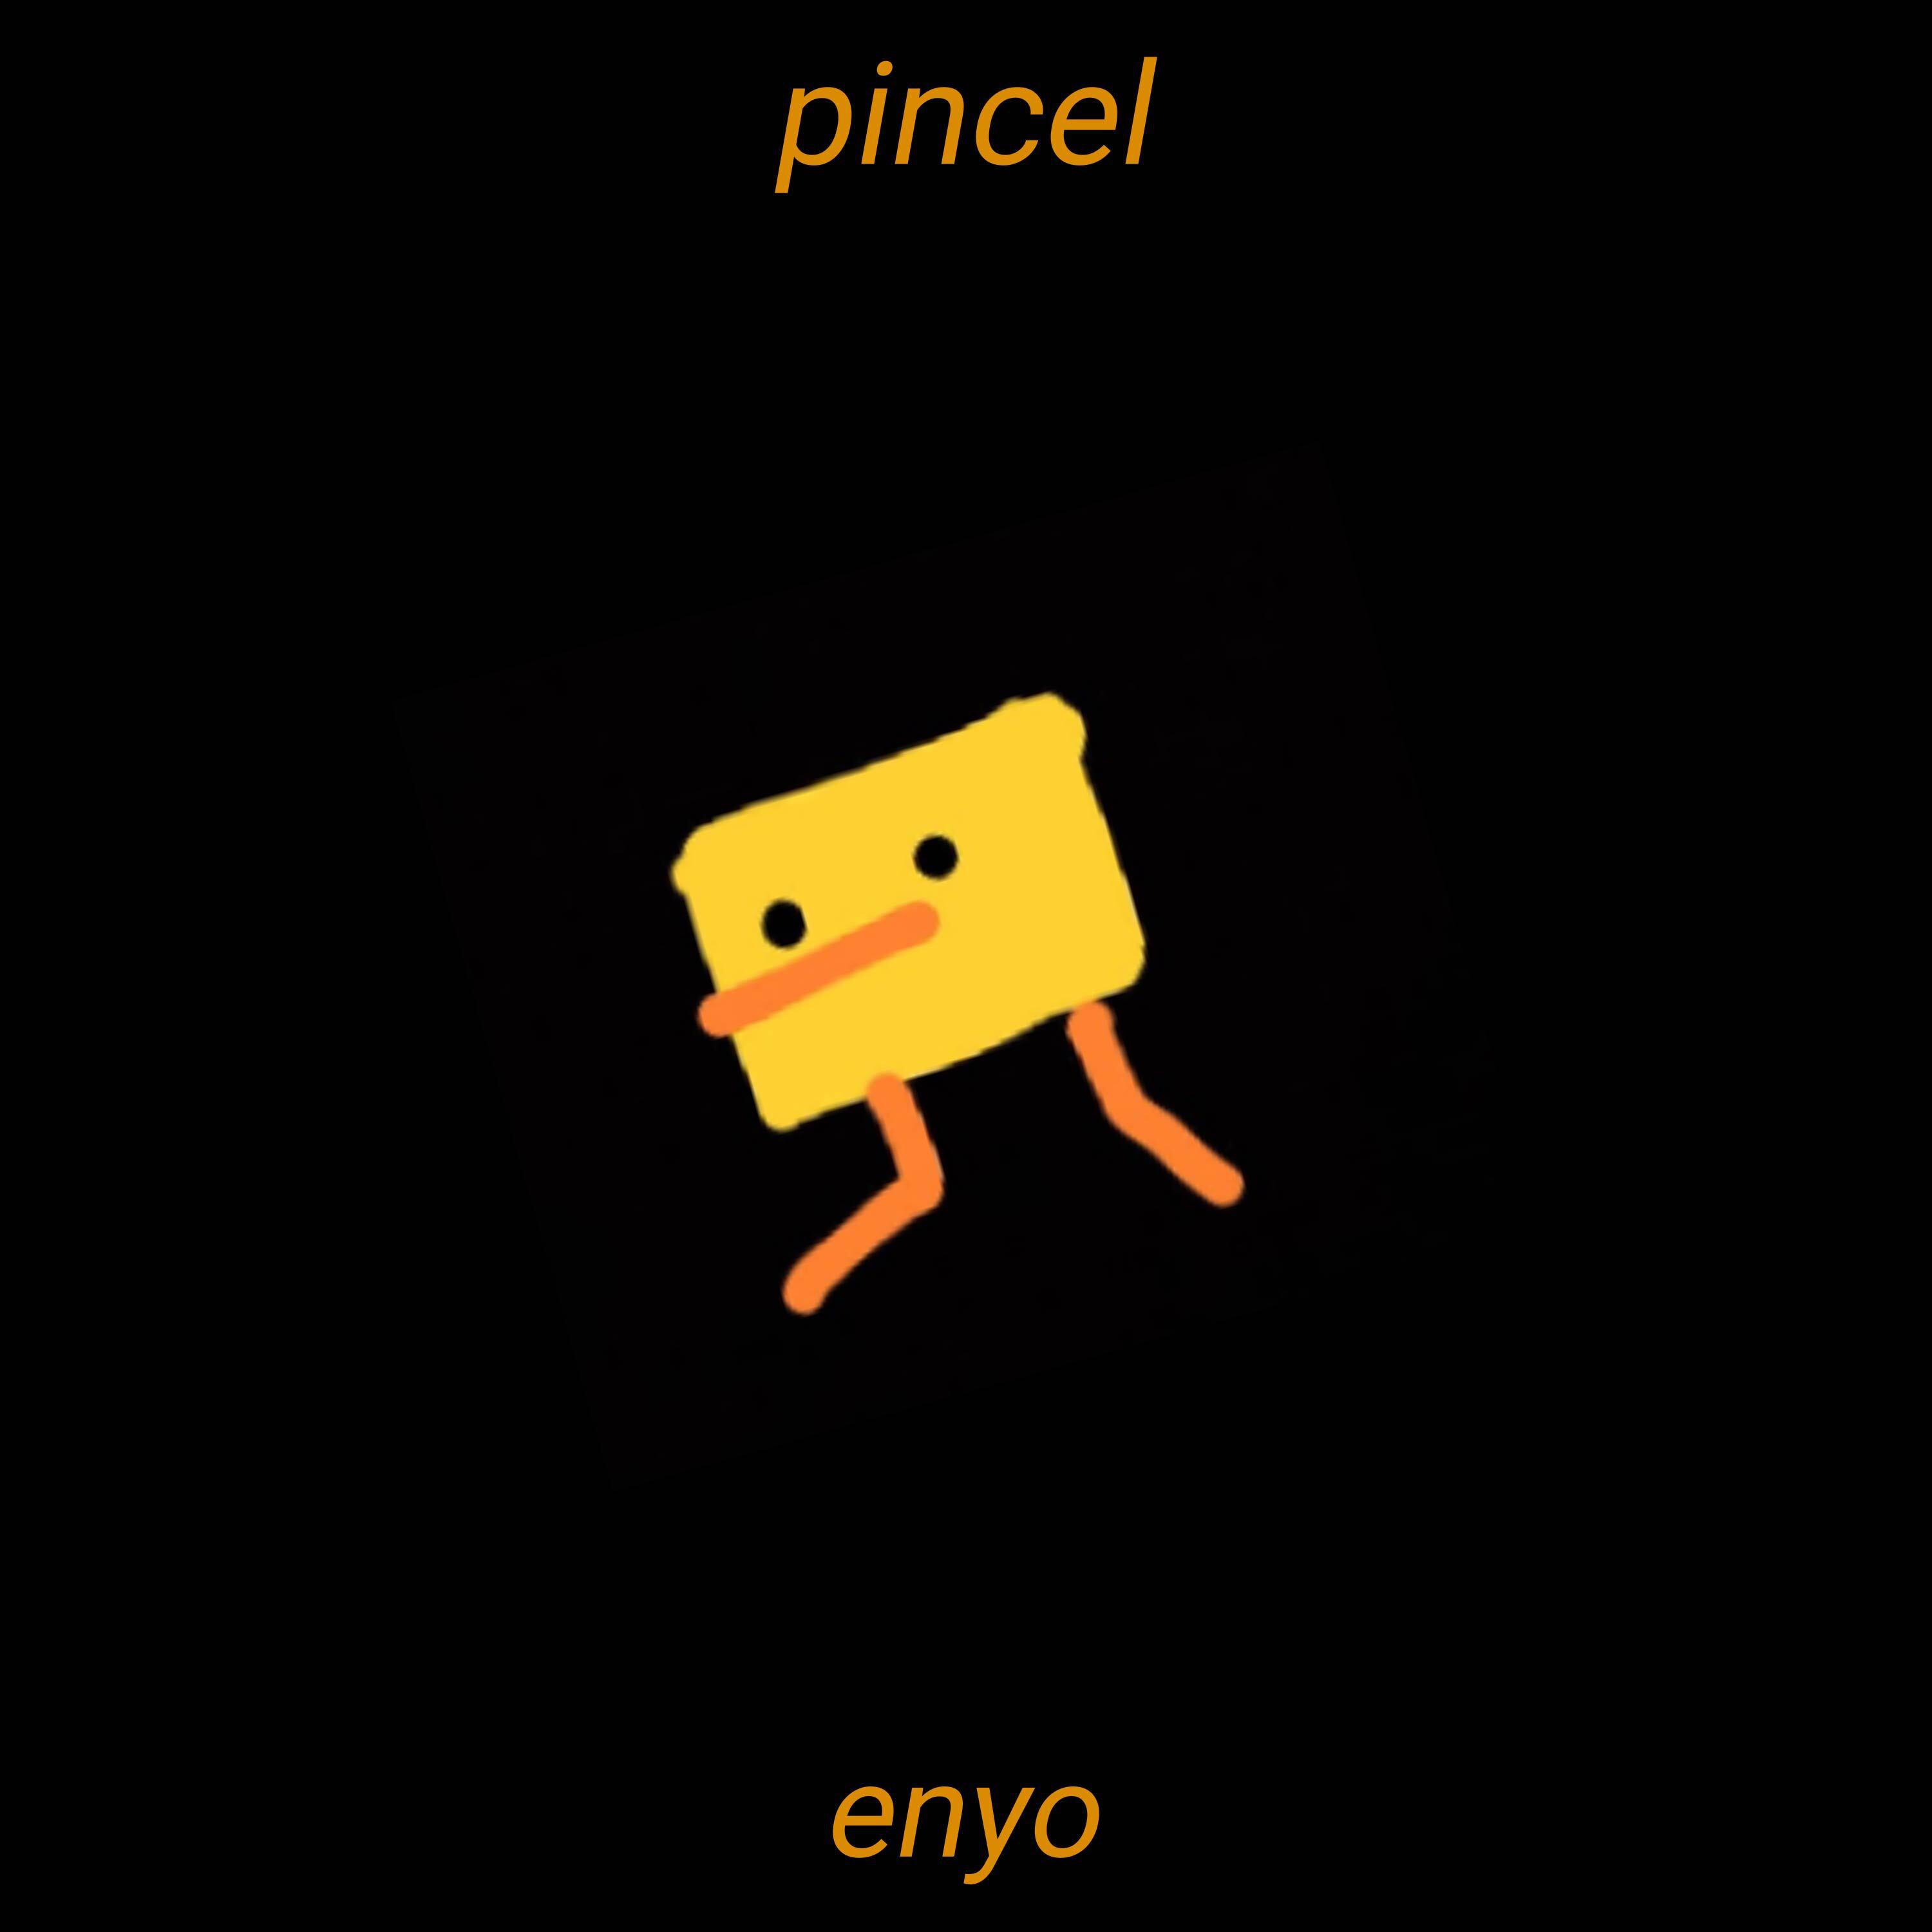 Enyo - Pincel